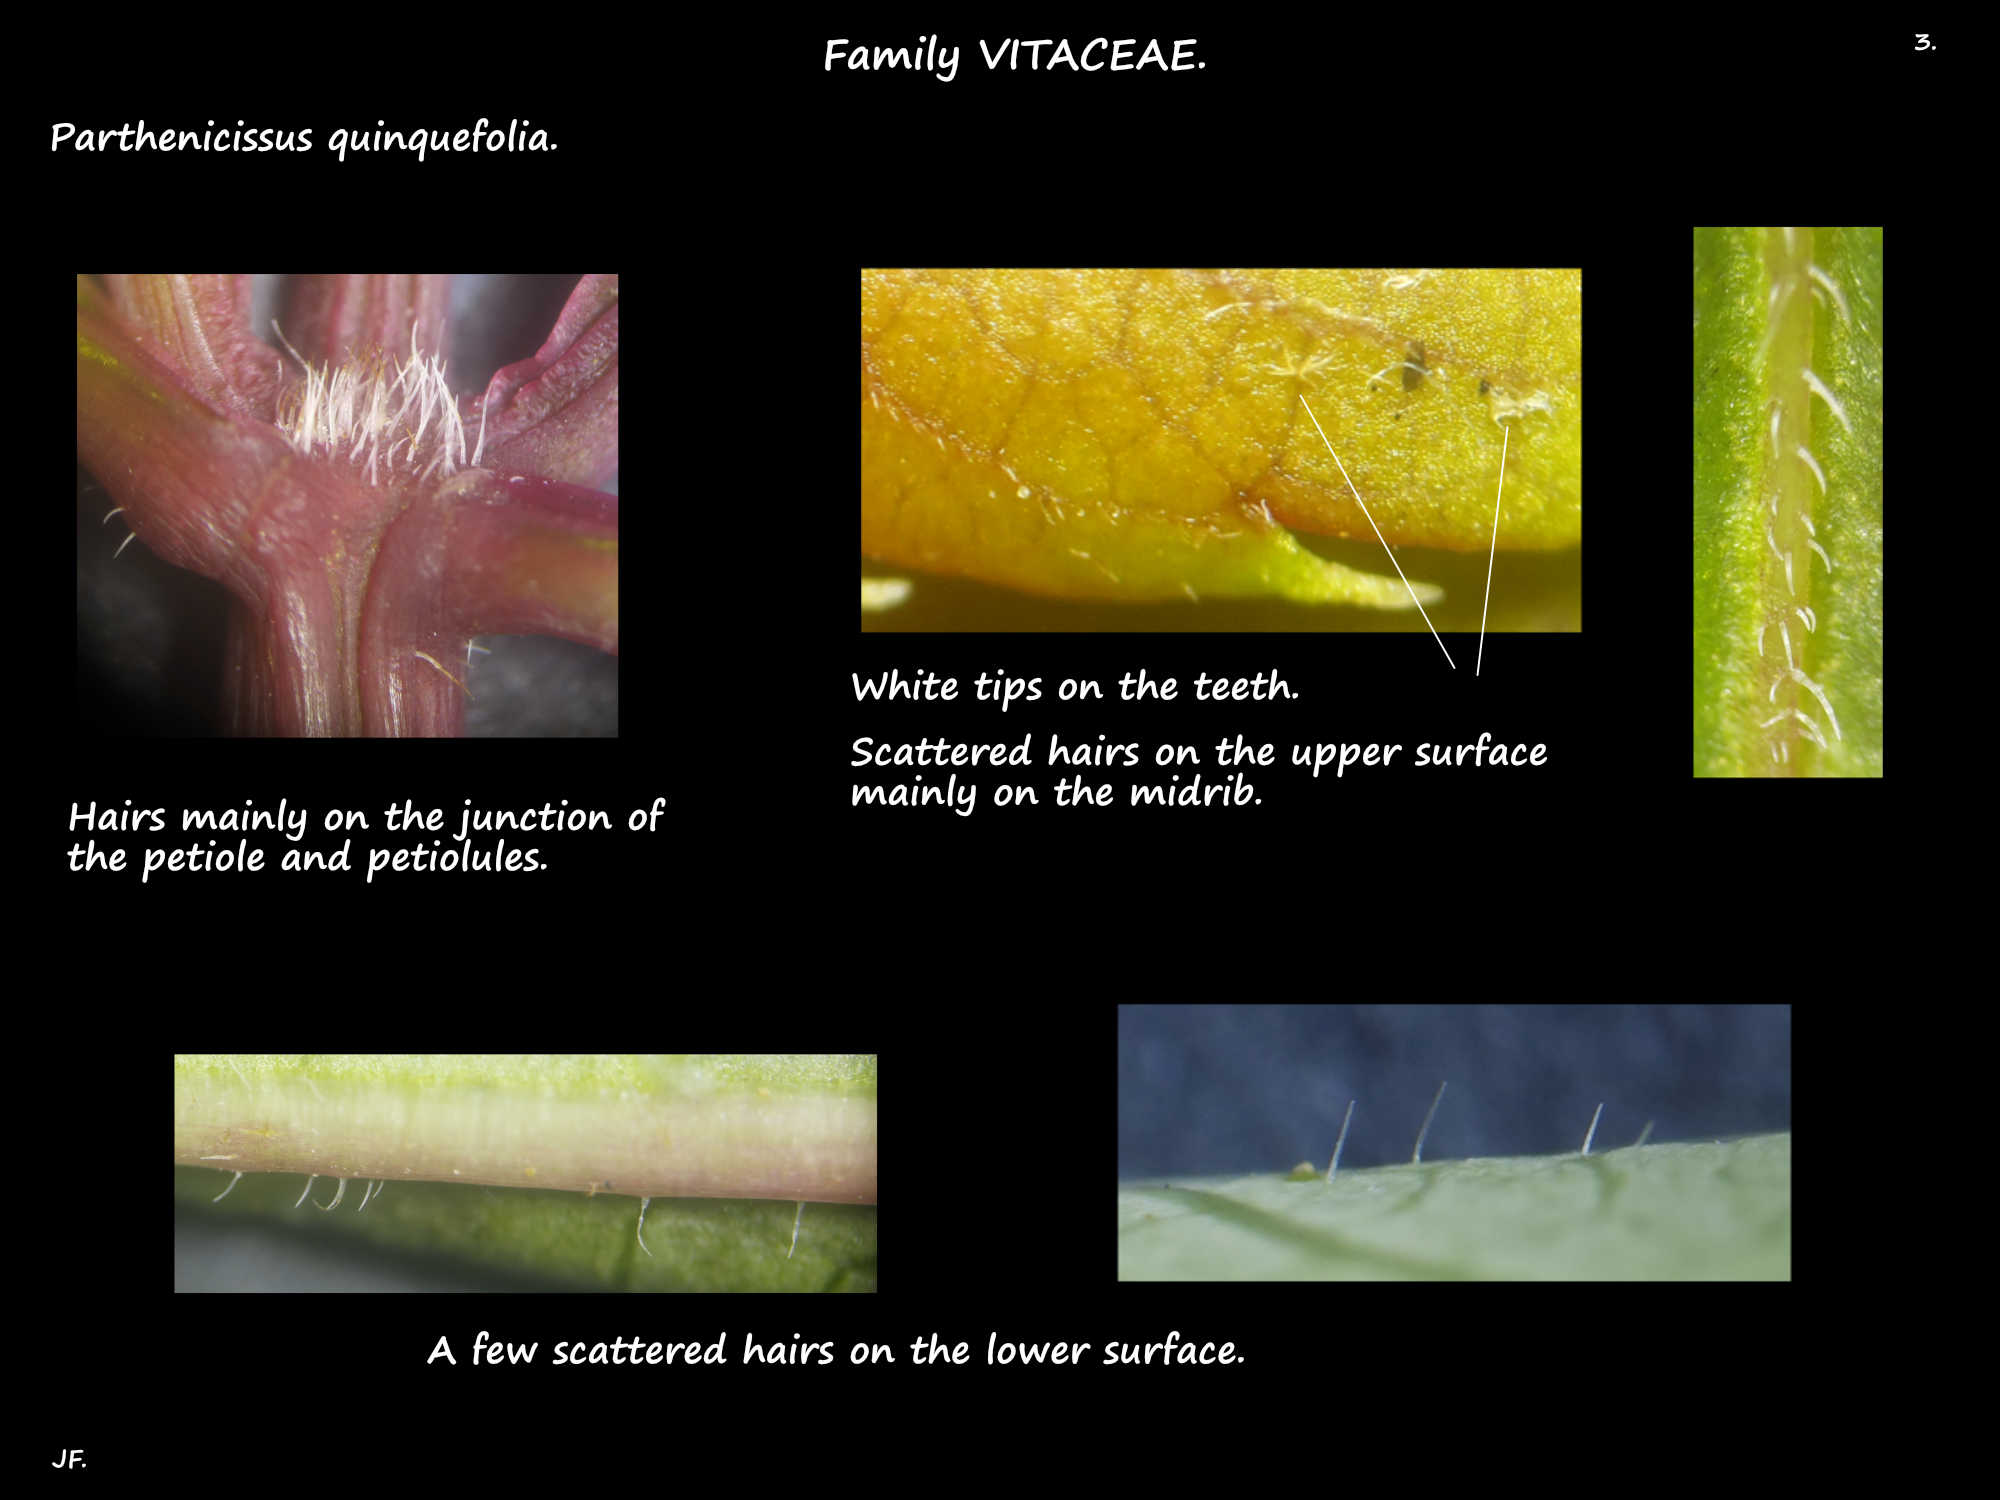 3 Parthenocissus quinquefolia leaf hairs